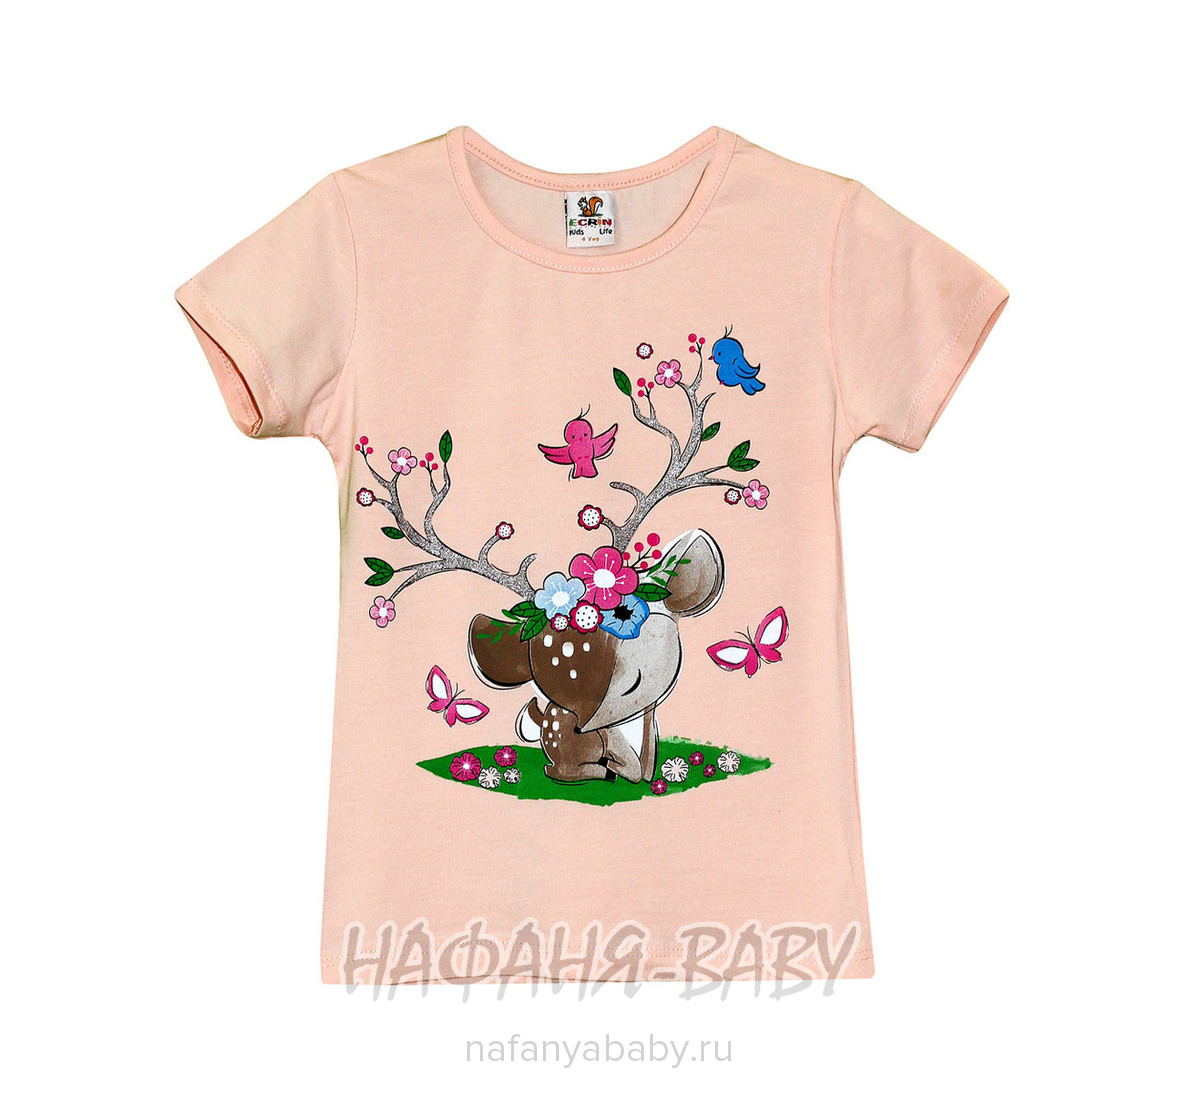 Детская футболка ECRIN арт: 2856, 1-4 года, цвет коралловый, оптом Турция